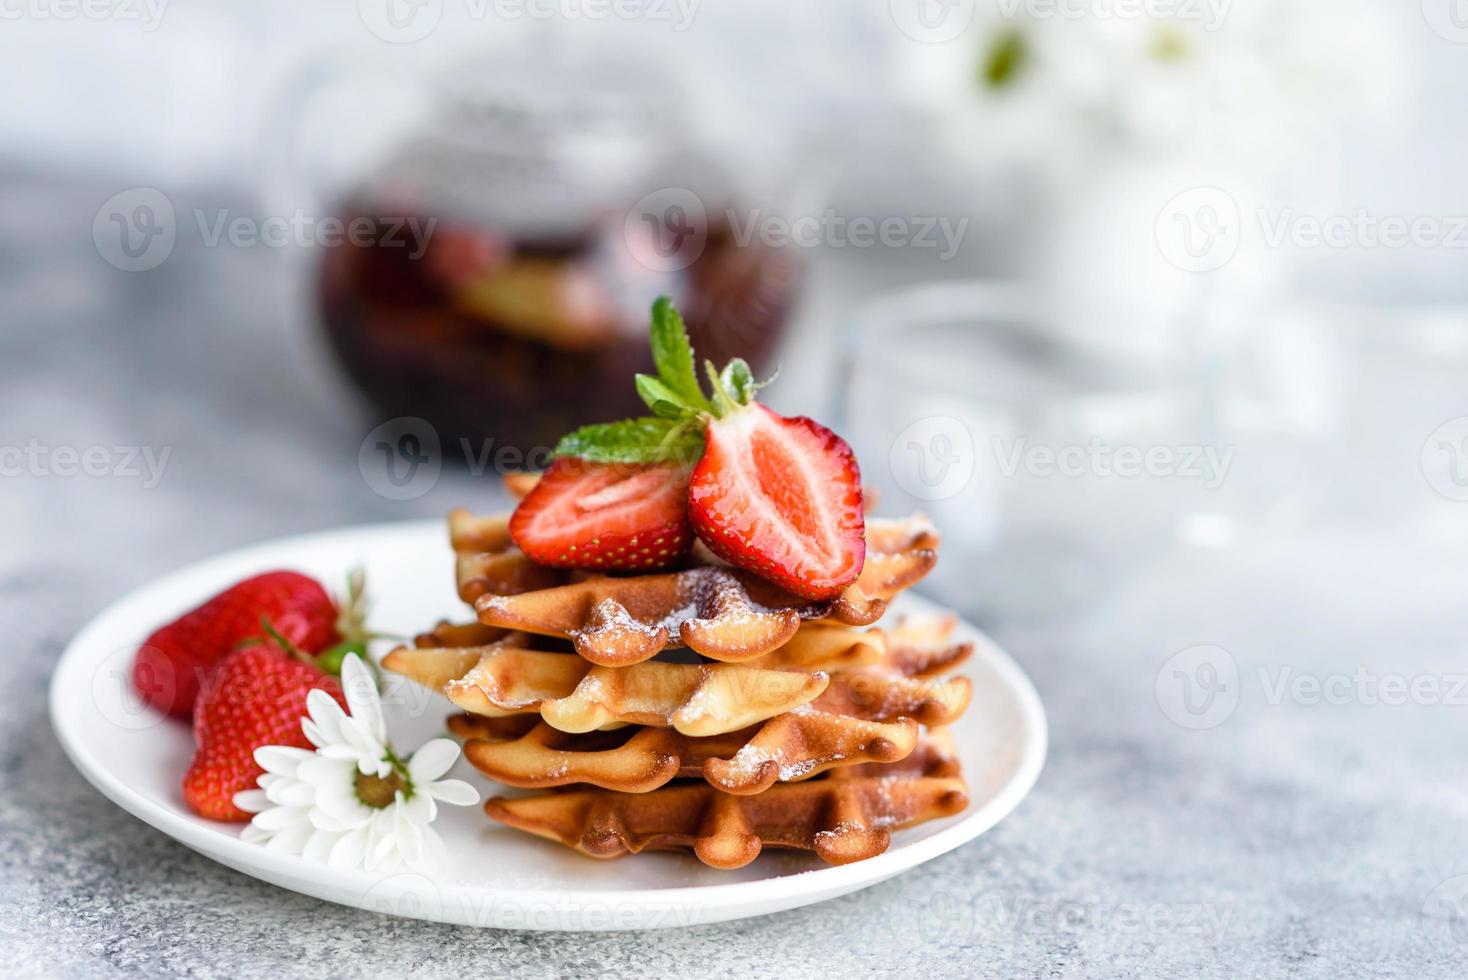 deliciosos waffles belgas recém-assados com bagas e frutas foto